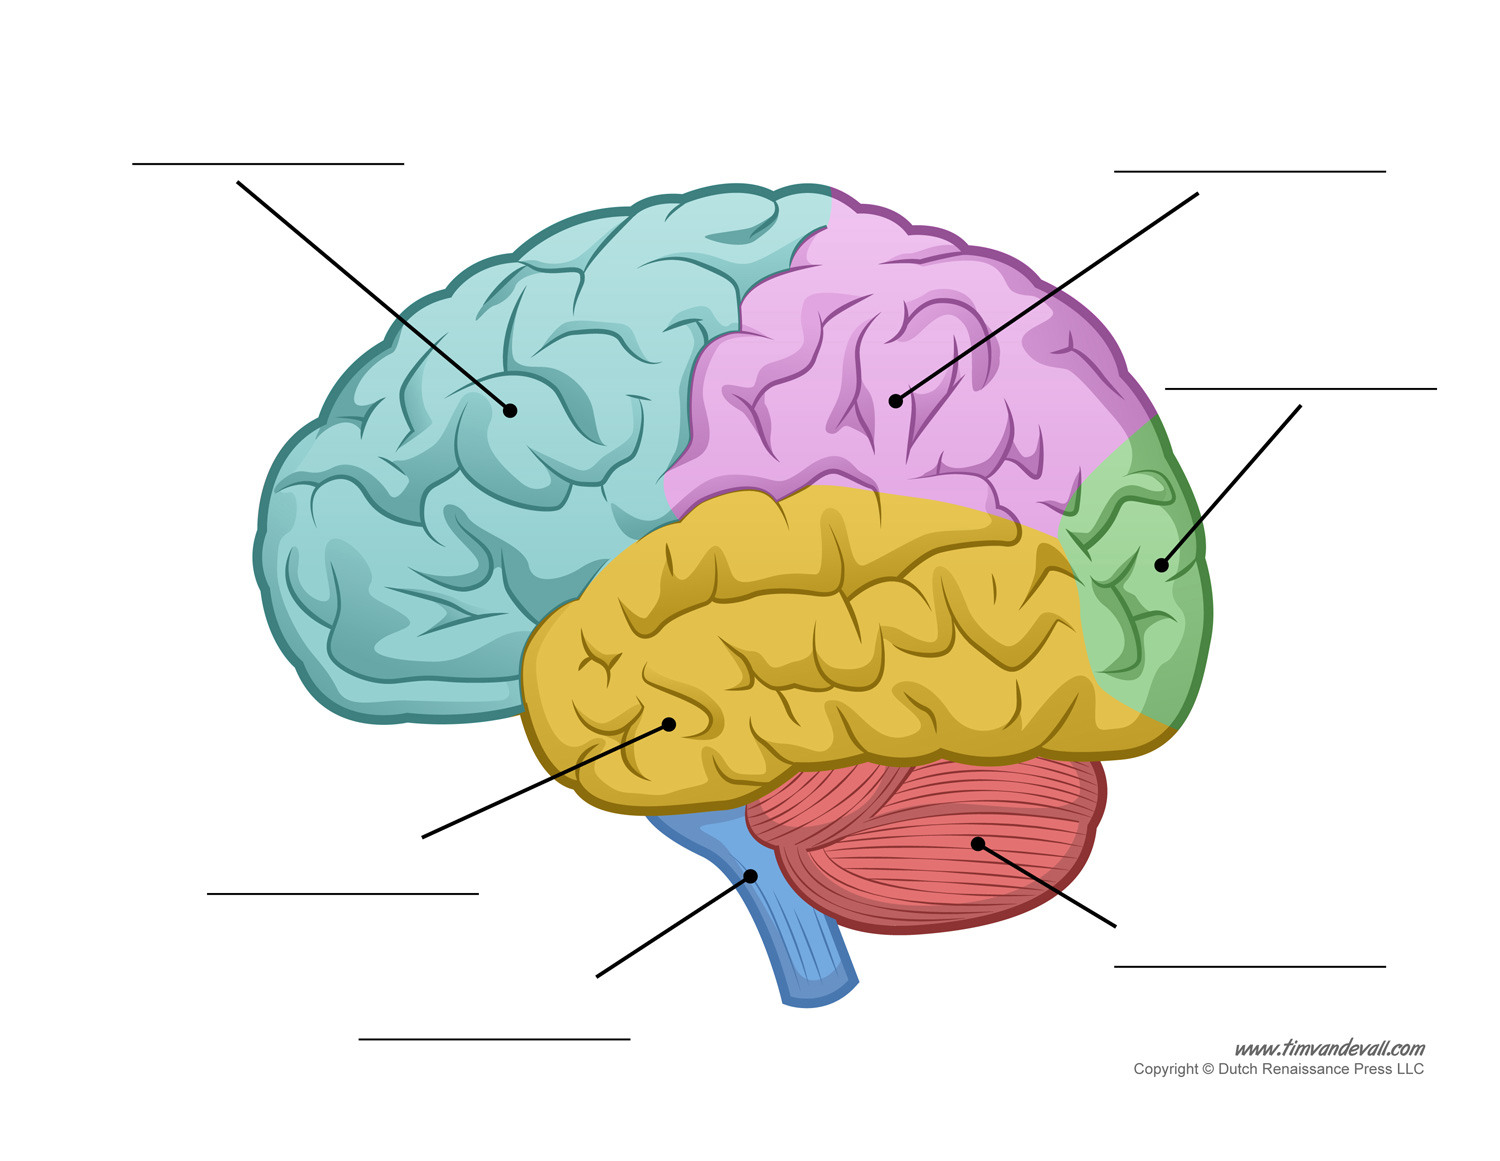 Human Brain Diagram